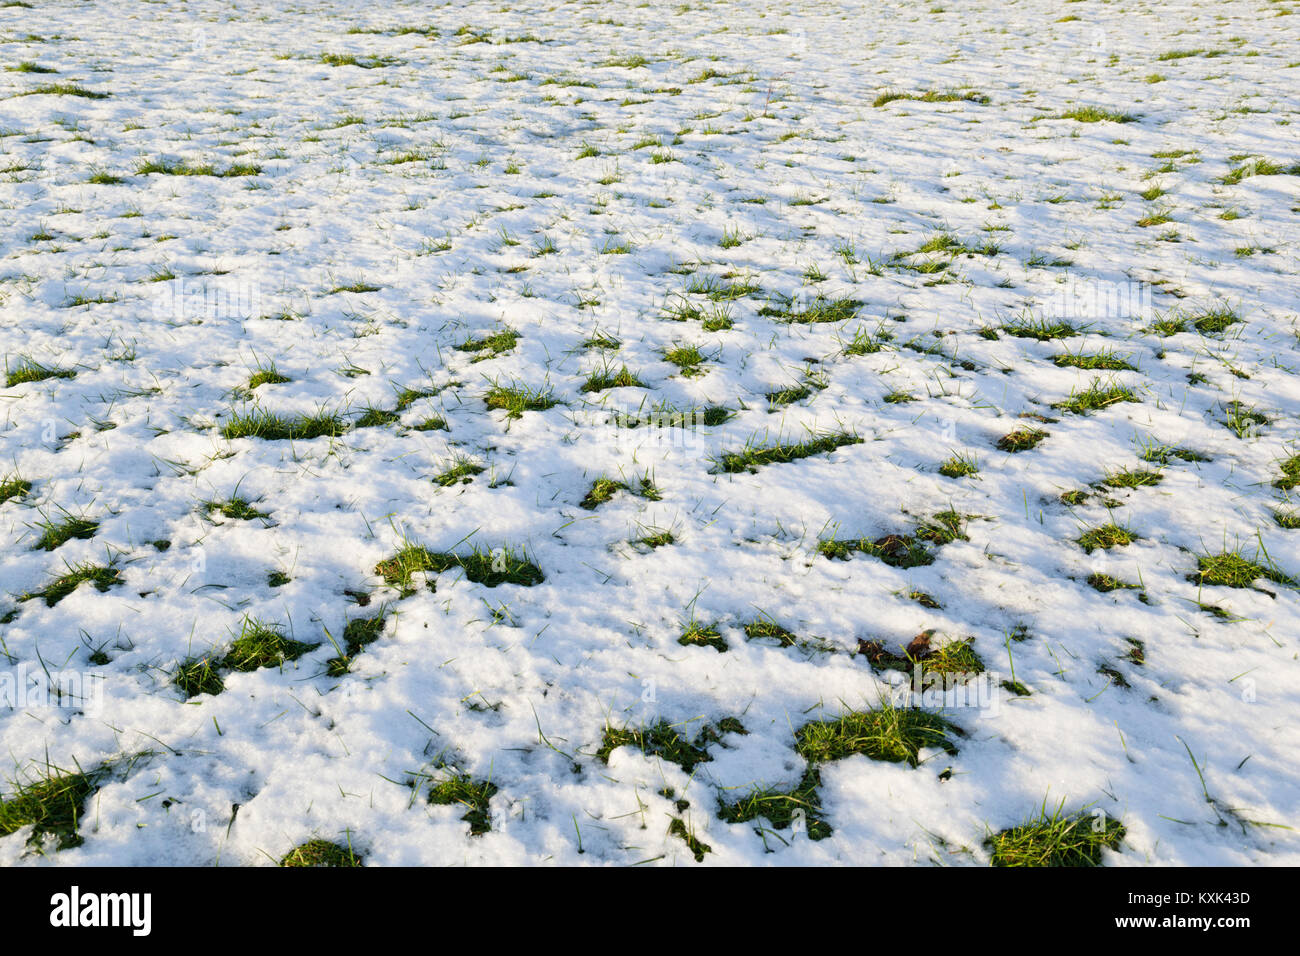 La fonte des neiges avec les correctifs de l'herbe verte piquer à travers, Gloucestershire, Angleterre, Royaume-Uni, Europe Banque D'Images